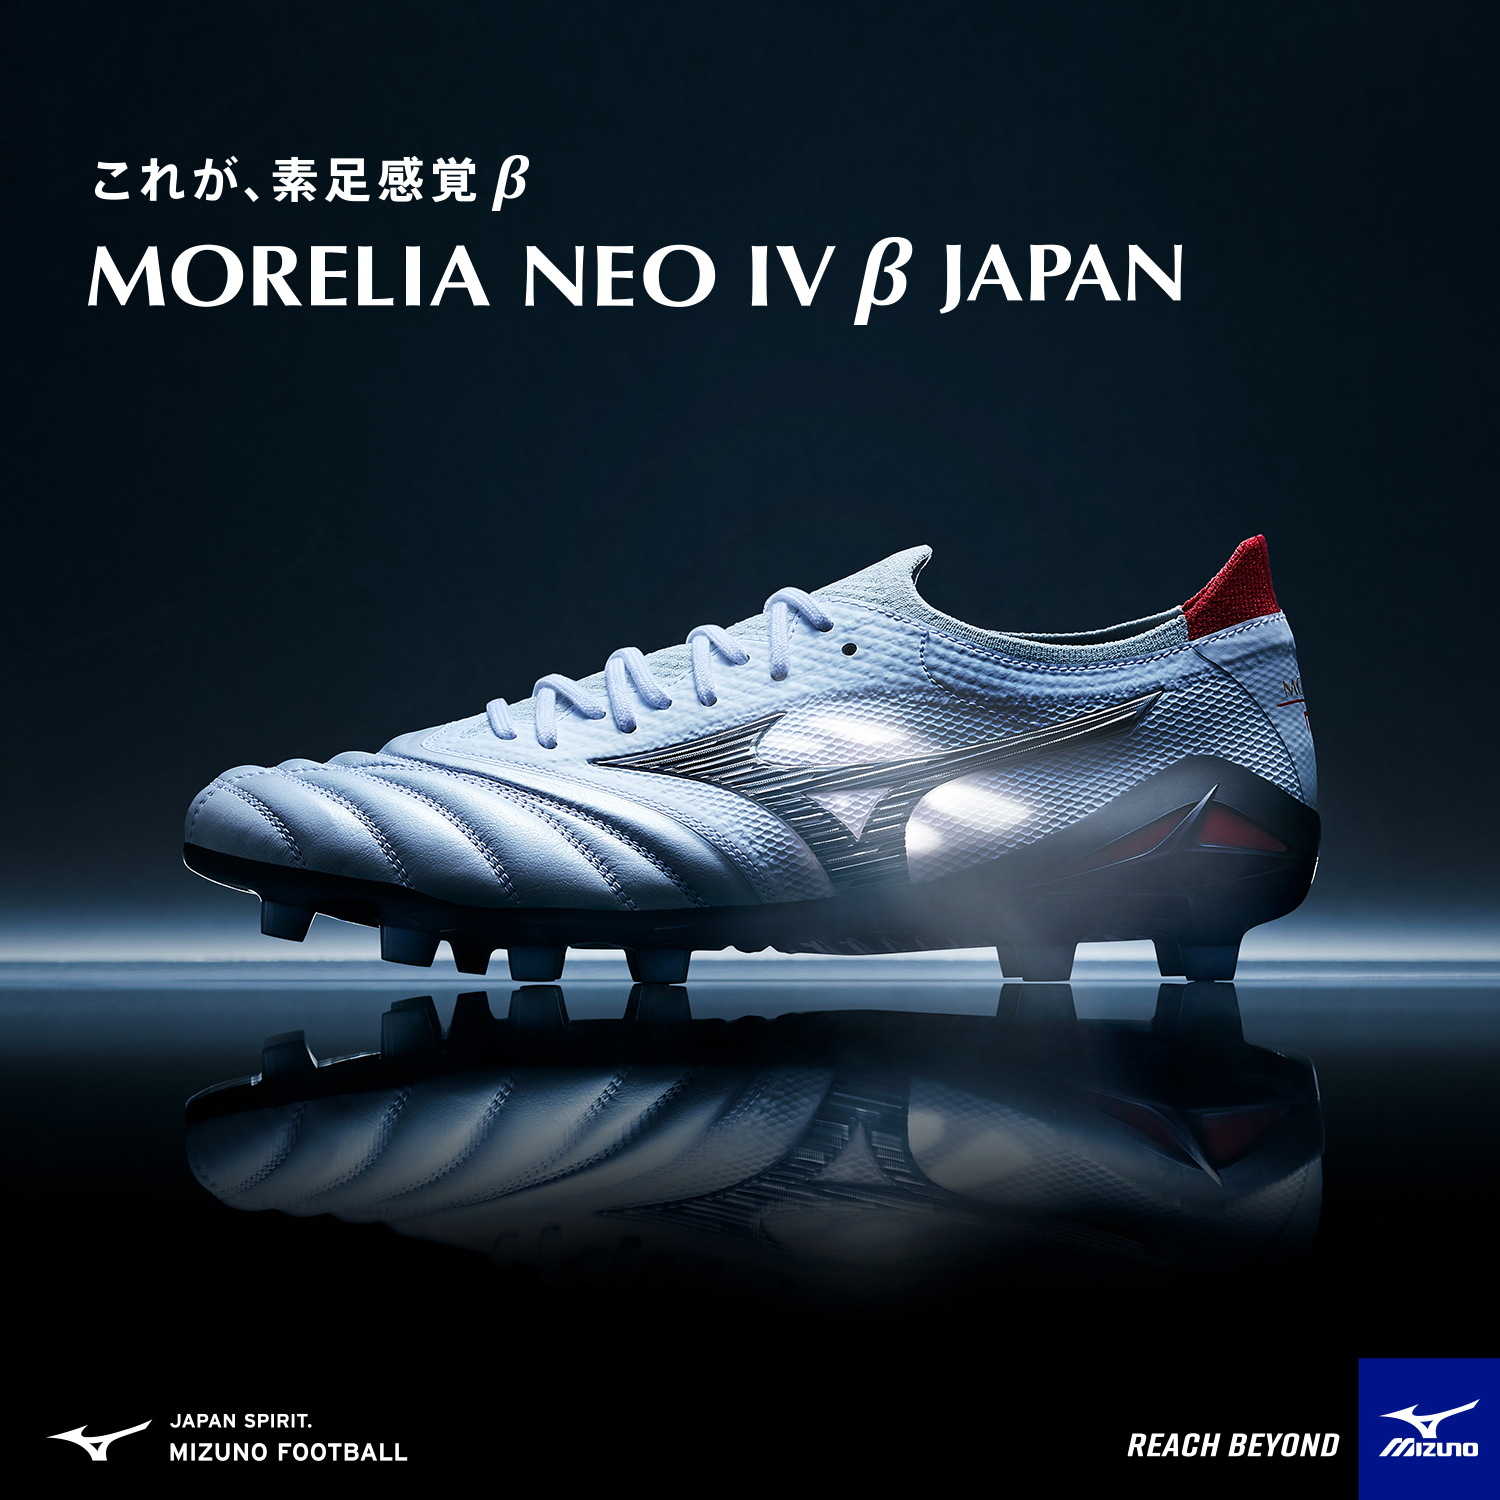 モレリア NEO 4 β JAPAN - サッカーショップ ユニオンスポーツ